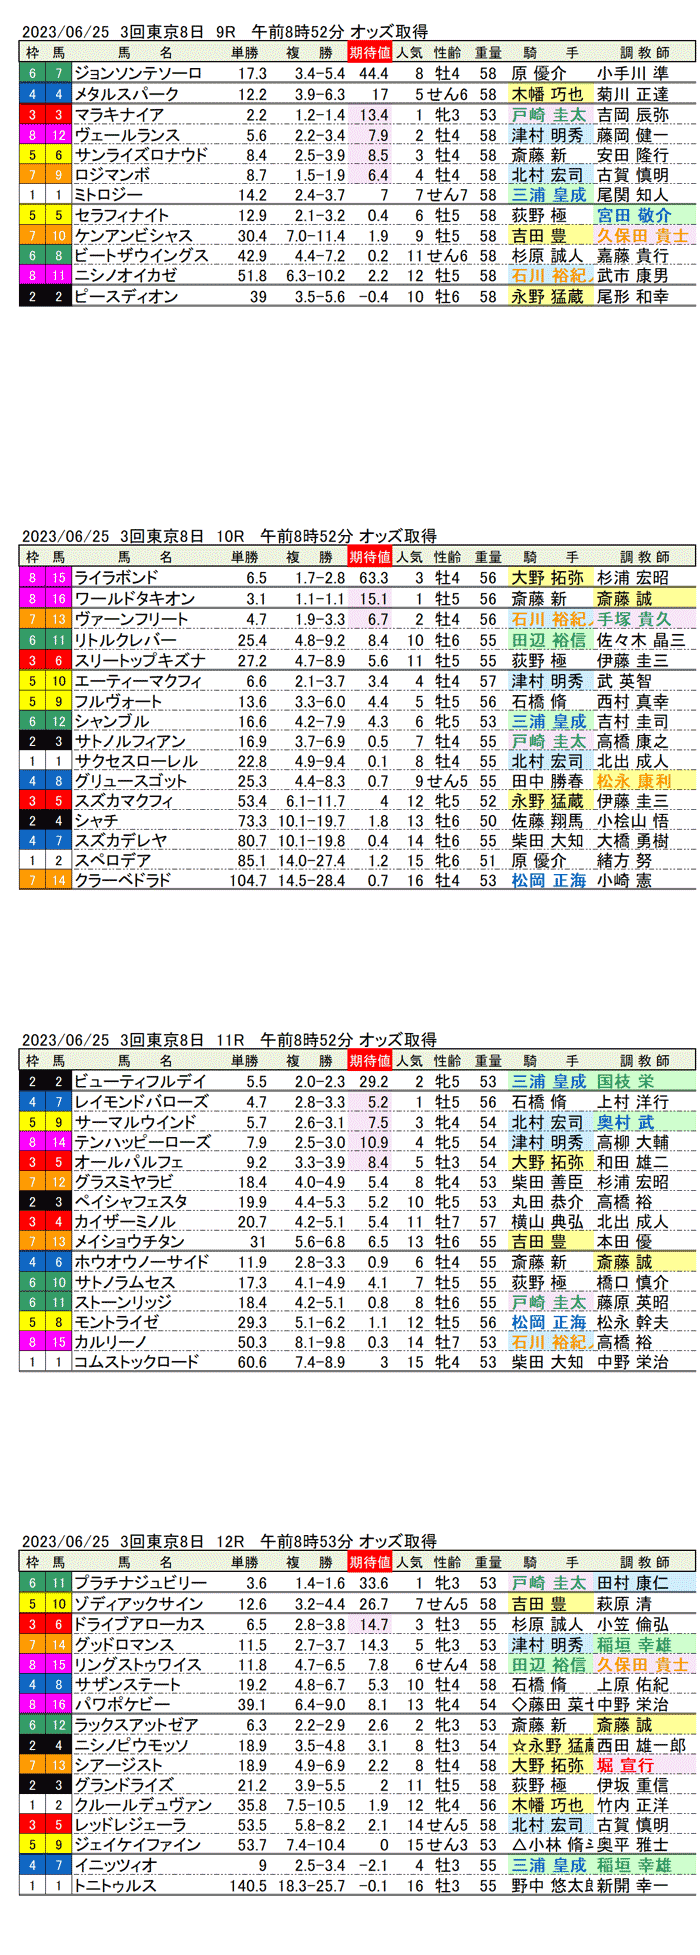 23年6月25日（日曜）期待値の公開　3回東京競馬8日目9R〜12R　パラダイスステークス